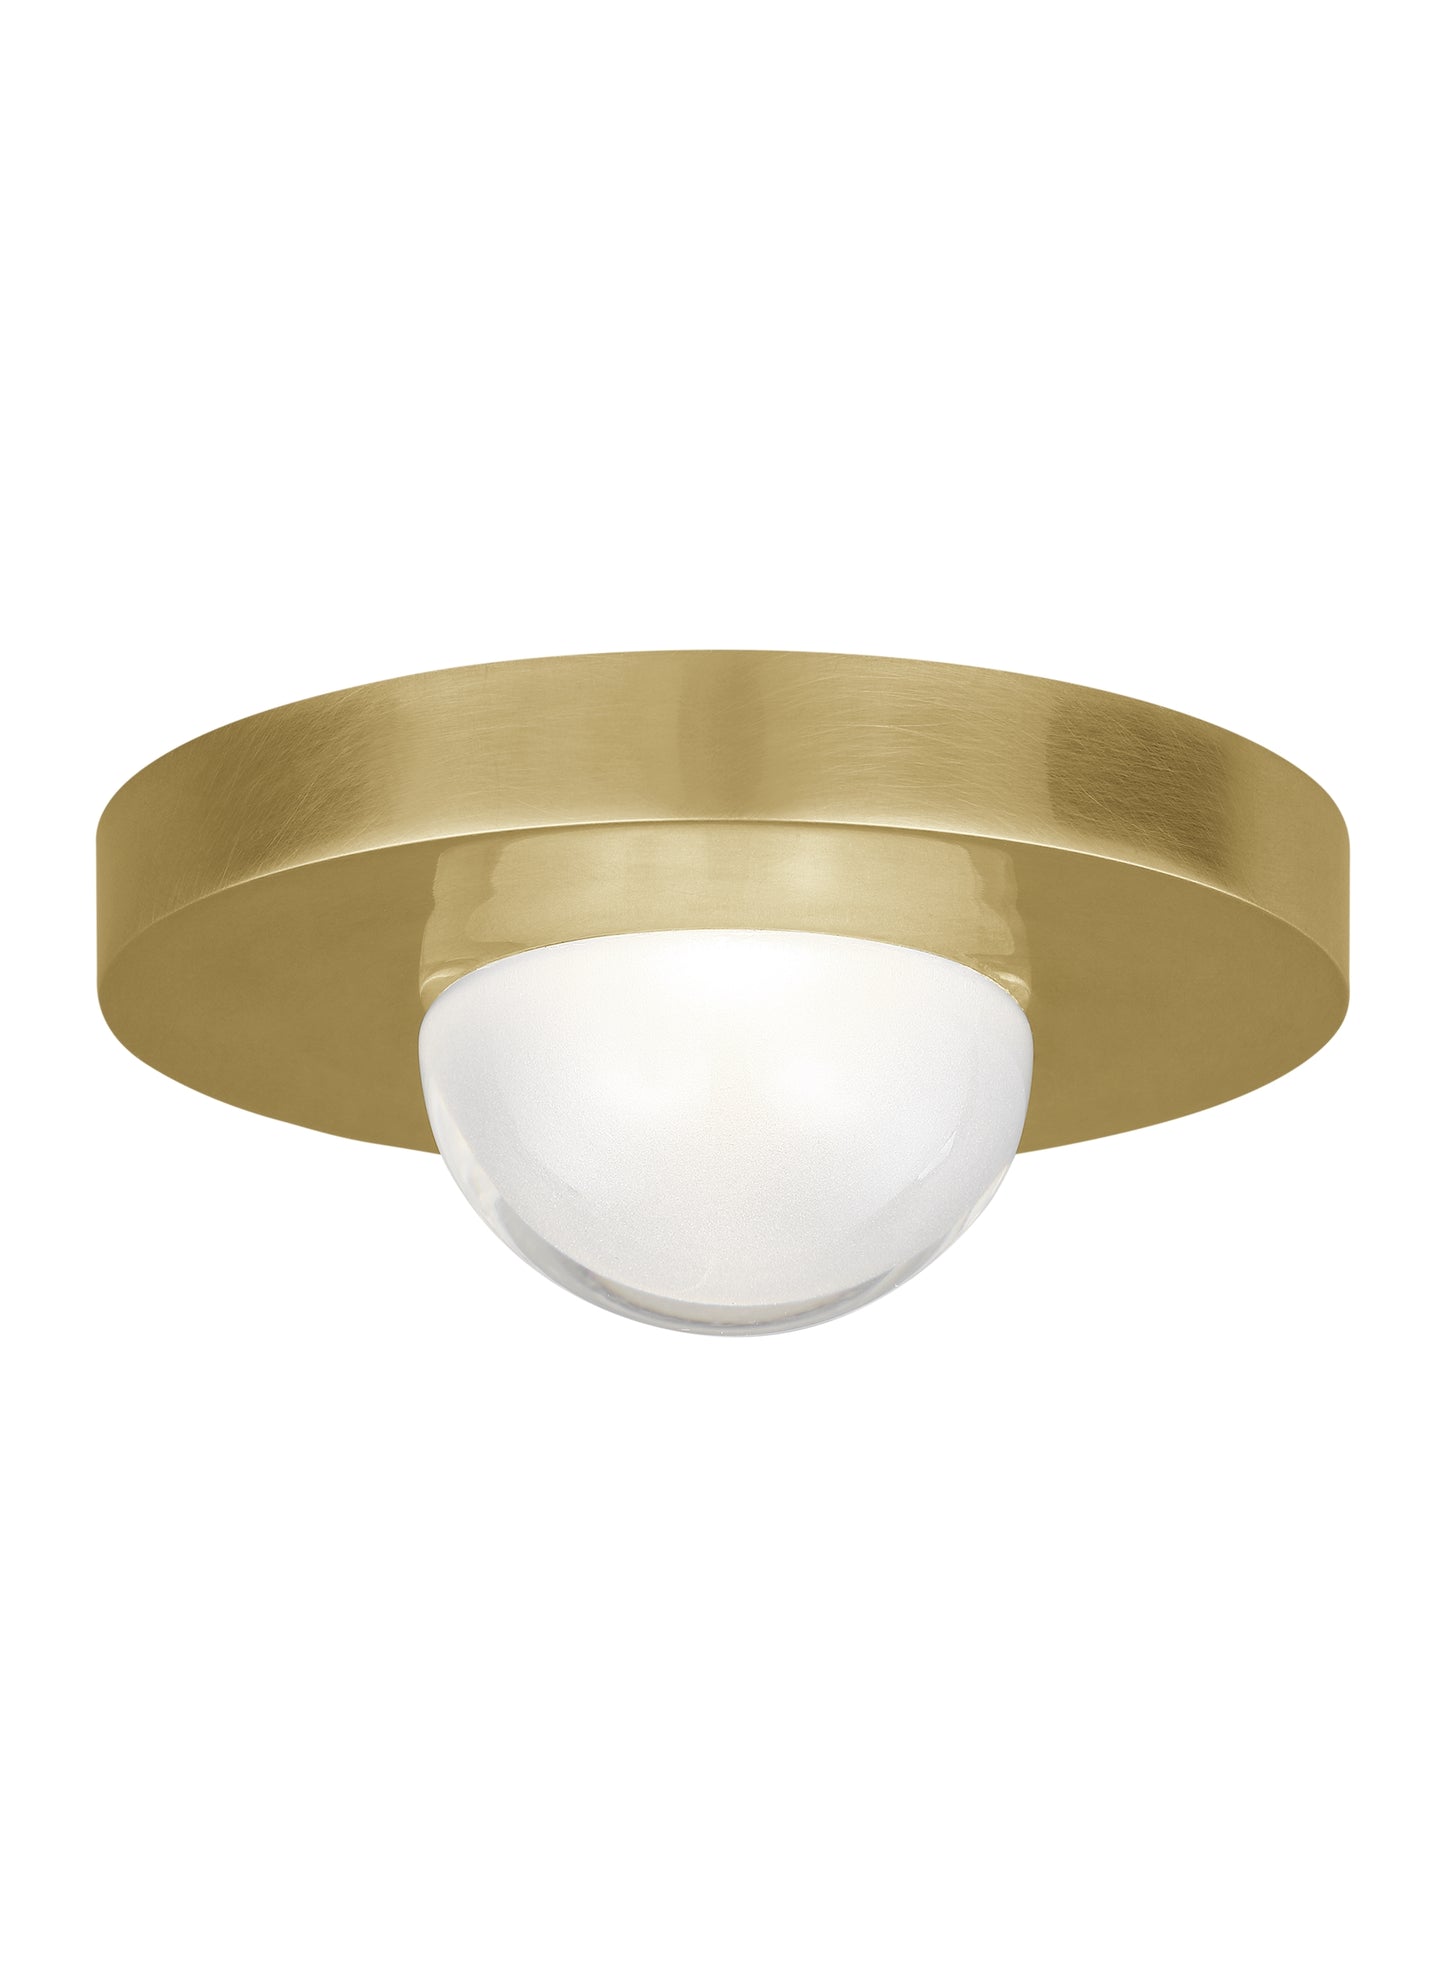 Ebell Flushmount | Brass Ceiling Light